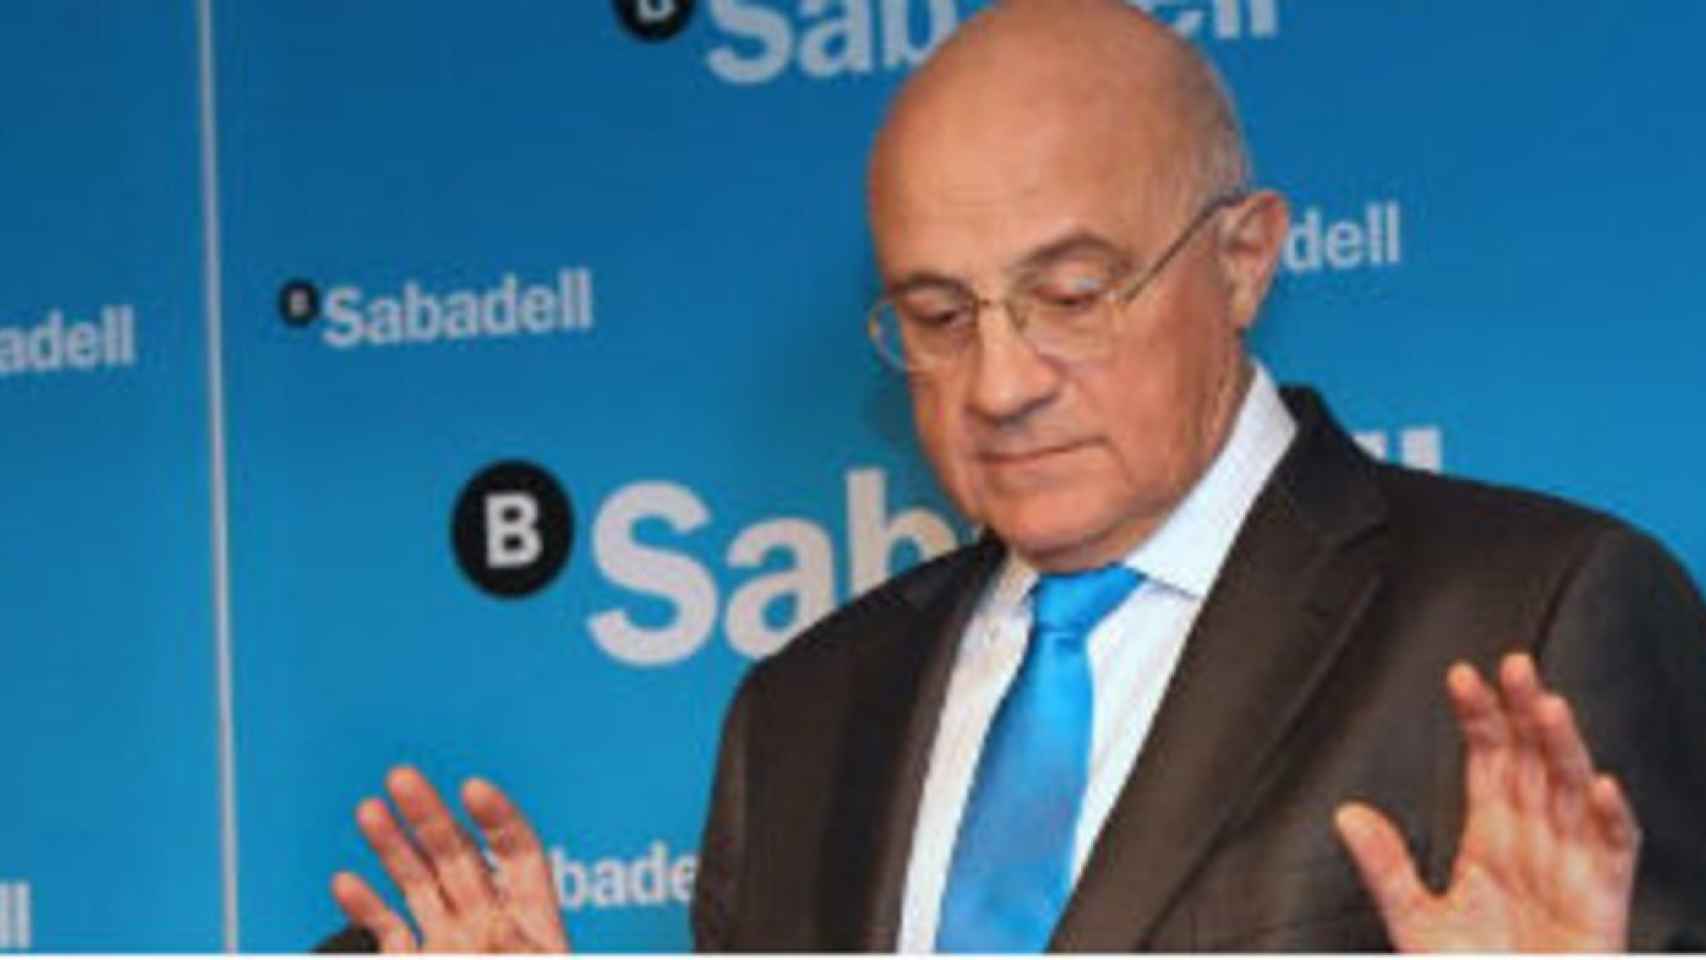 Oliu (Sabadell) advierte que la banca está encareciendo las hipotecas por inseguridad jurídica